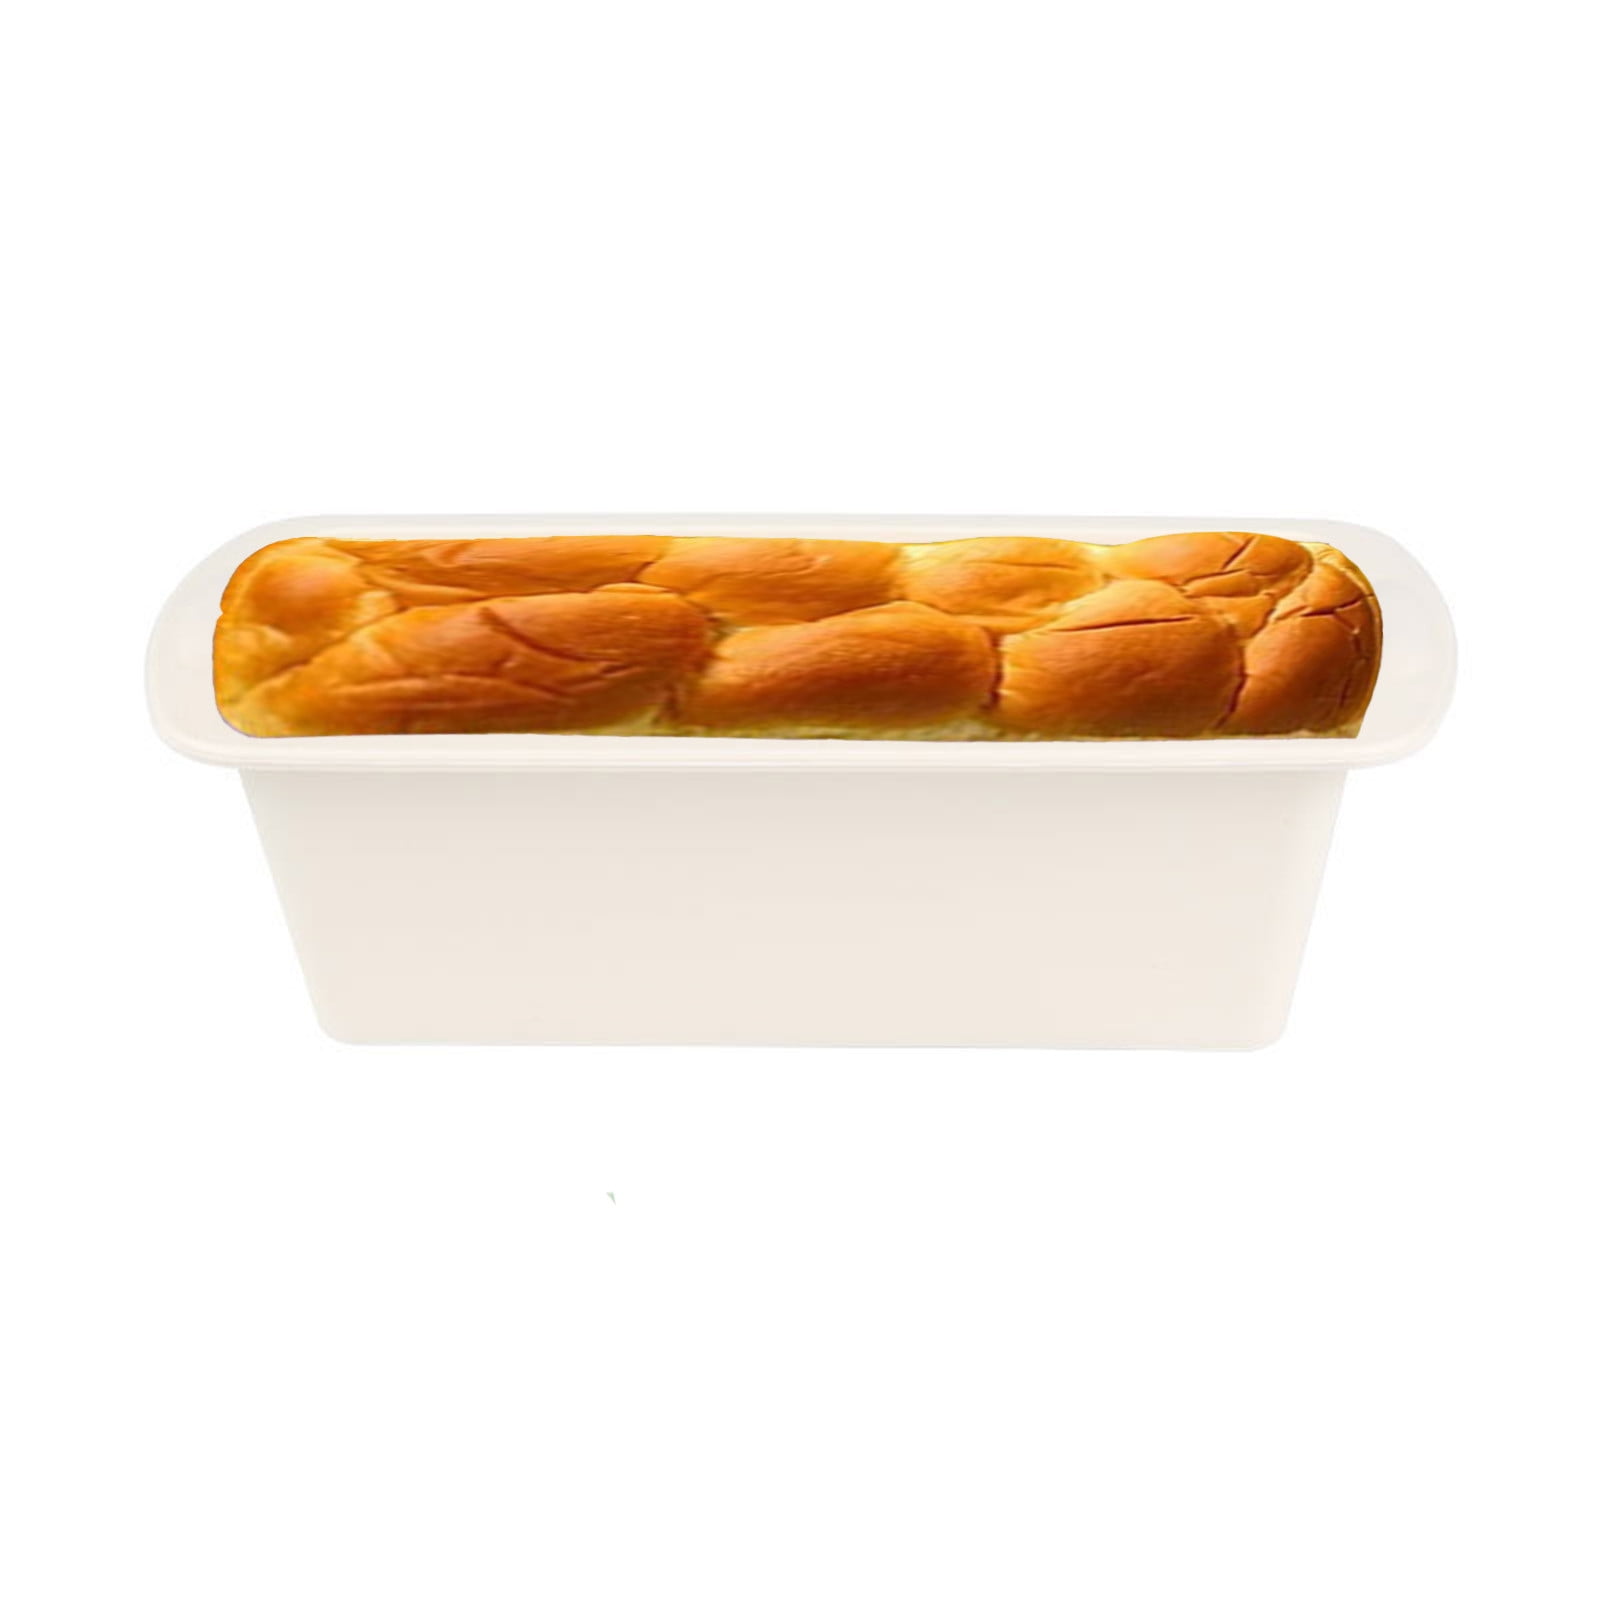 Non Stick - Loaf Pan (23.5 x 13 x 6cm / 9.3 x 5.1 x 2.4”)